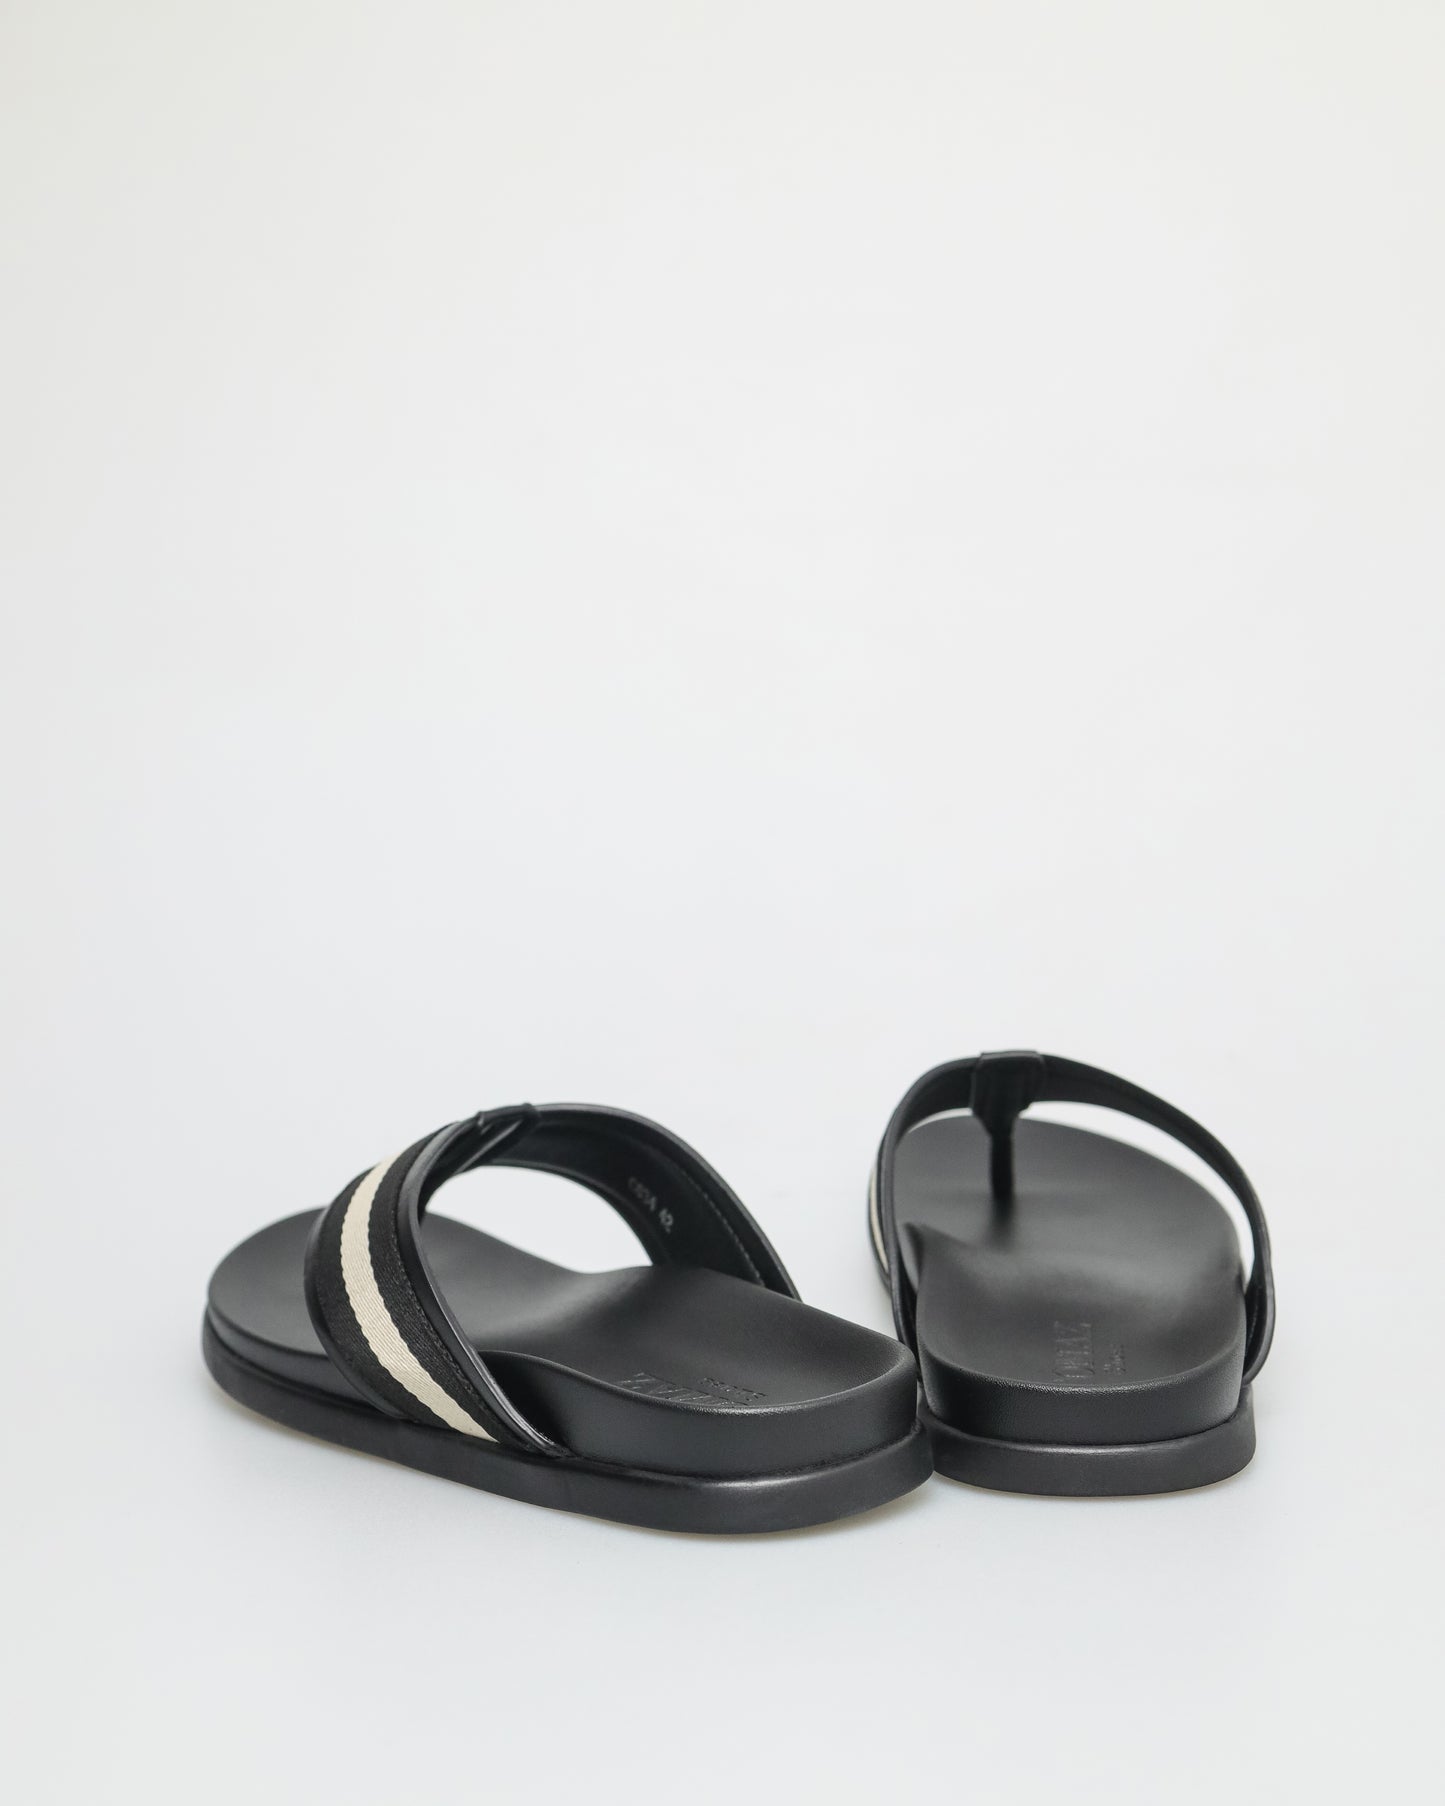 Tomaz C634 Men's Stripe Sandal (Black/Off White)